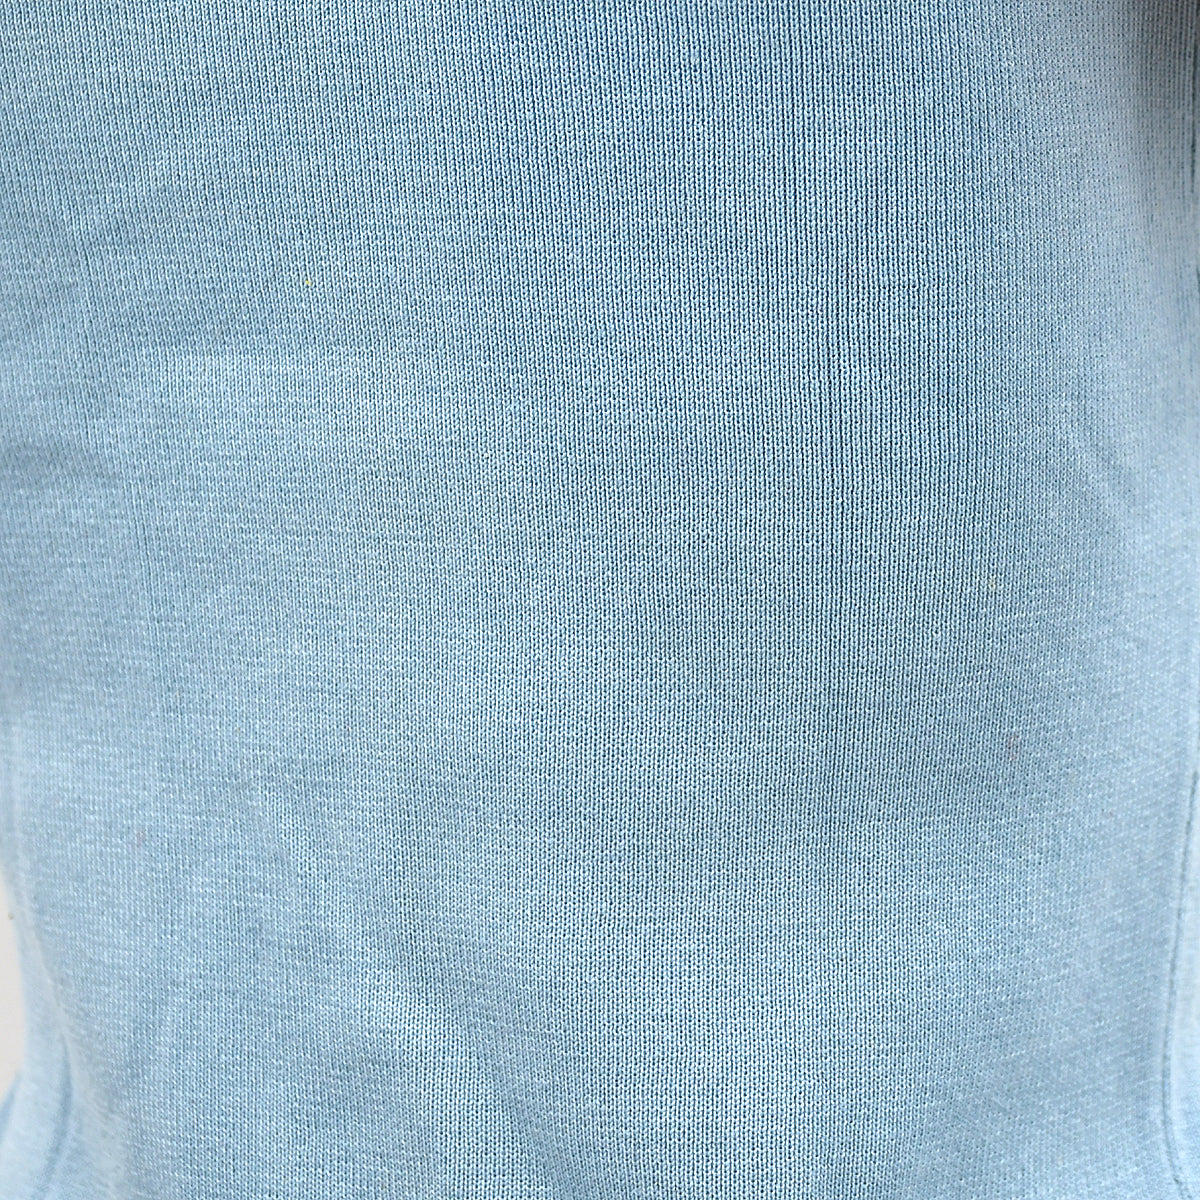 Chanel T-shirt Light Blue 02S 